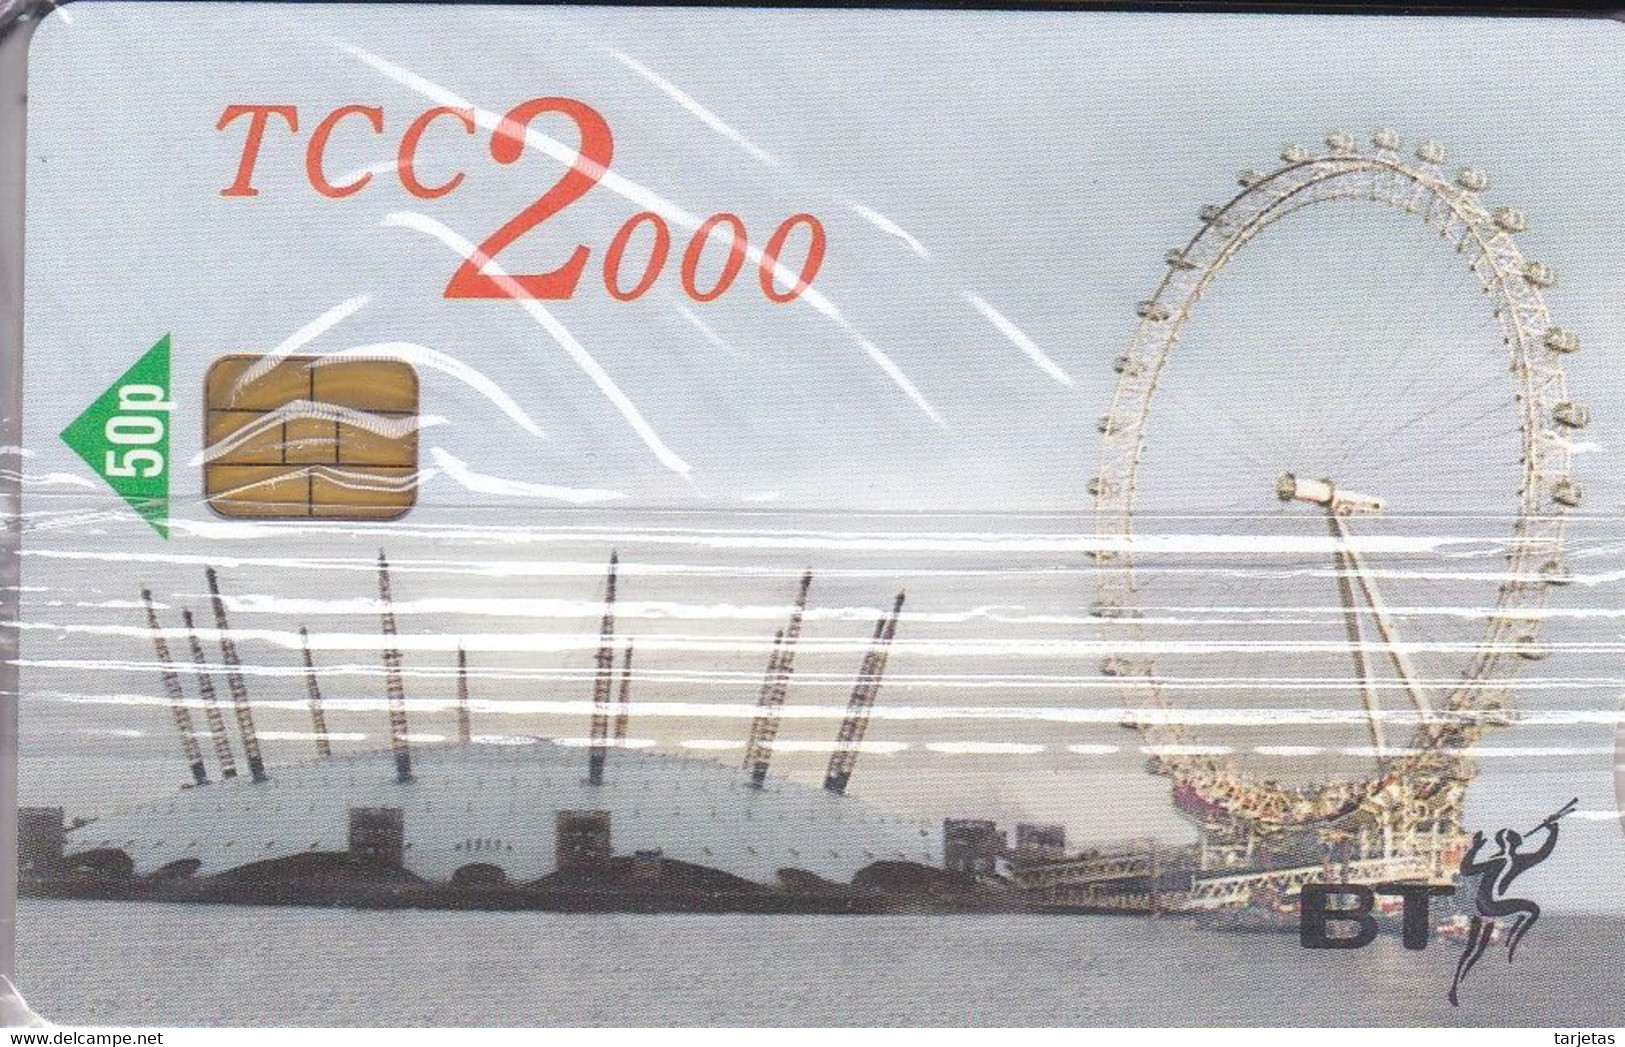 TARJETA DEL REINO UNIDO DE BT TCC 2000 (NUEVA-MINT) NORIA DE LONDRES - BT Promozionali